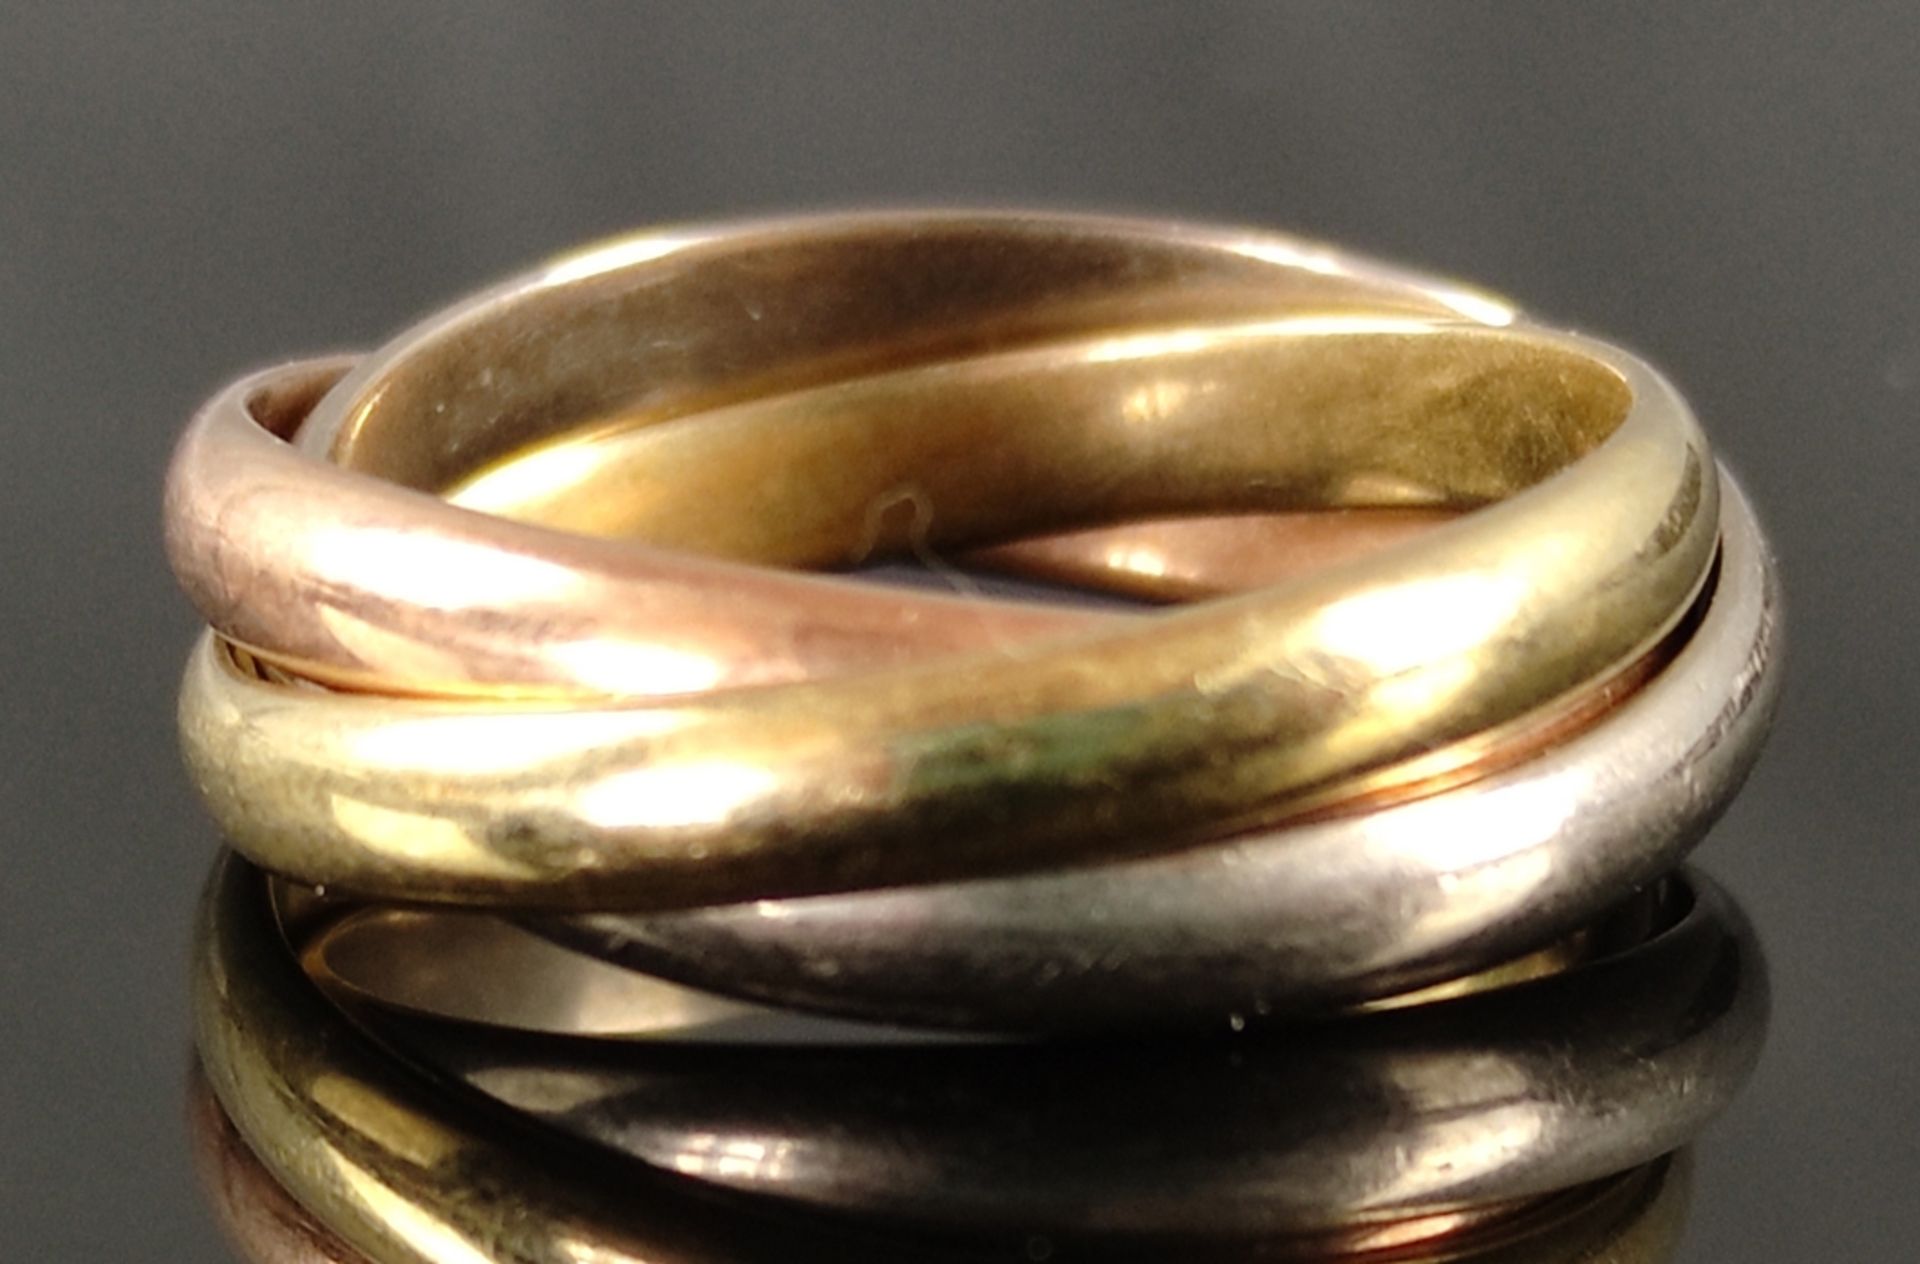 Trinity-Ring, 585/14K Gelb/Weiß/Rot-Gold, 6,5g, Größe 52